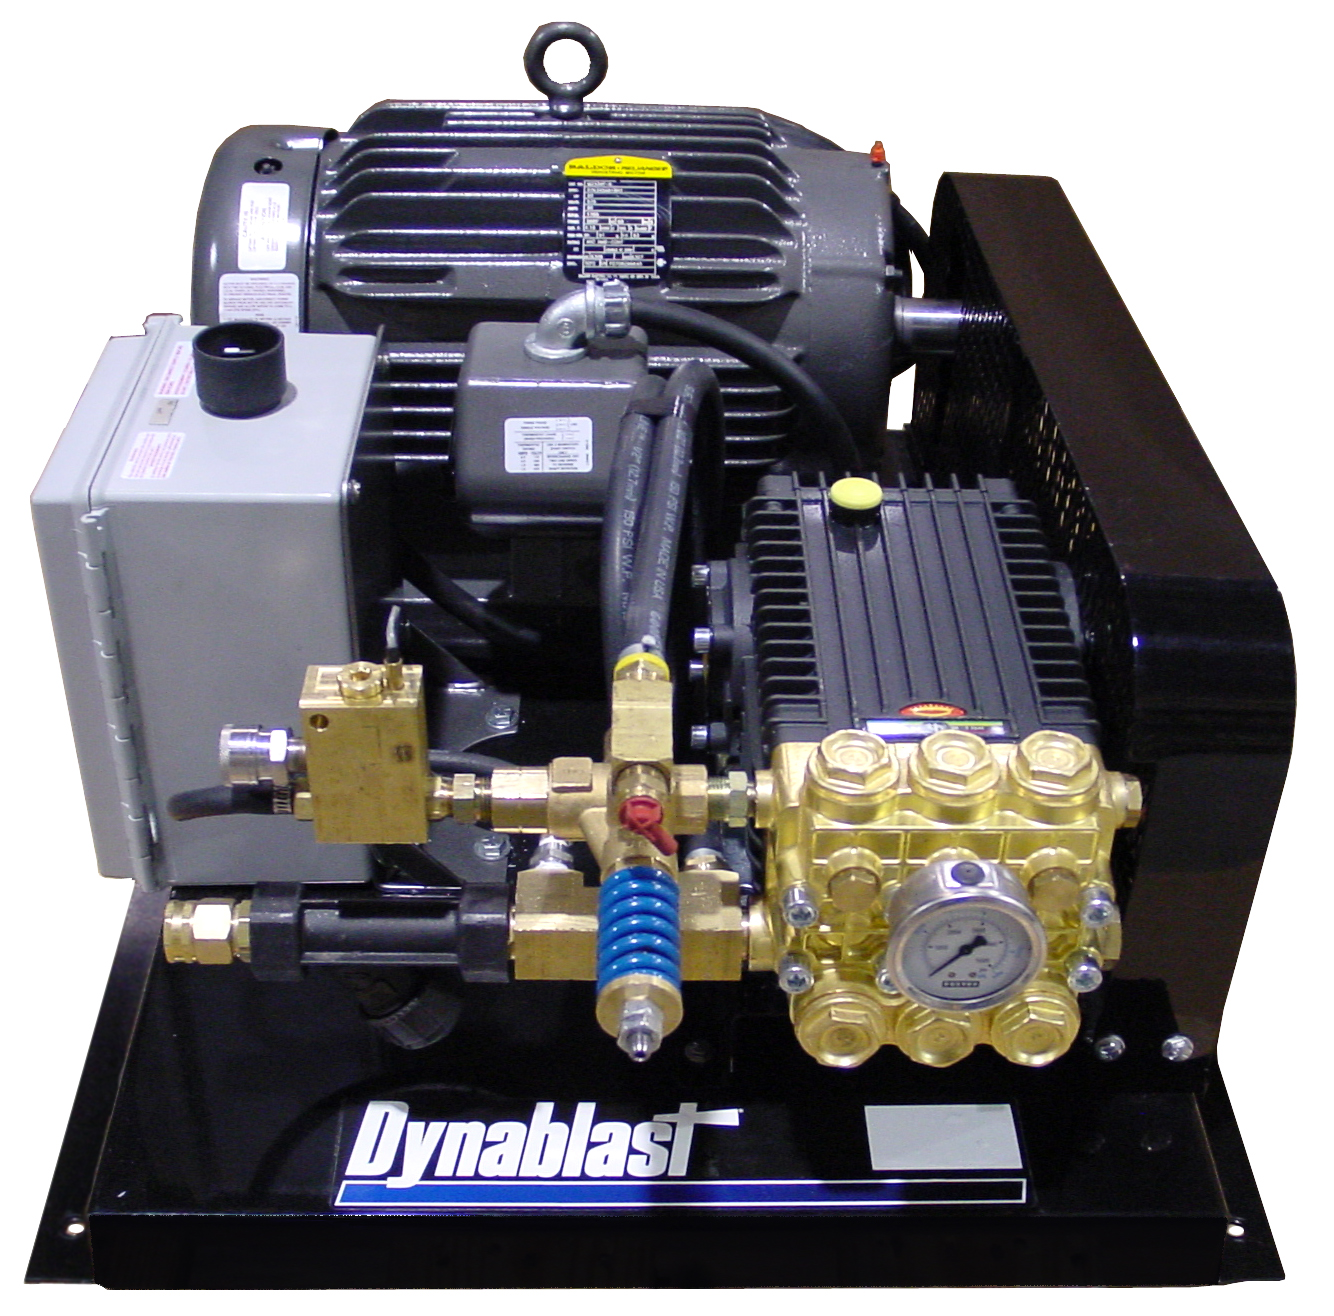 Dynablast MPUB530E1 Cold Water Pressure Washer